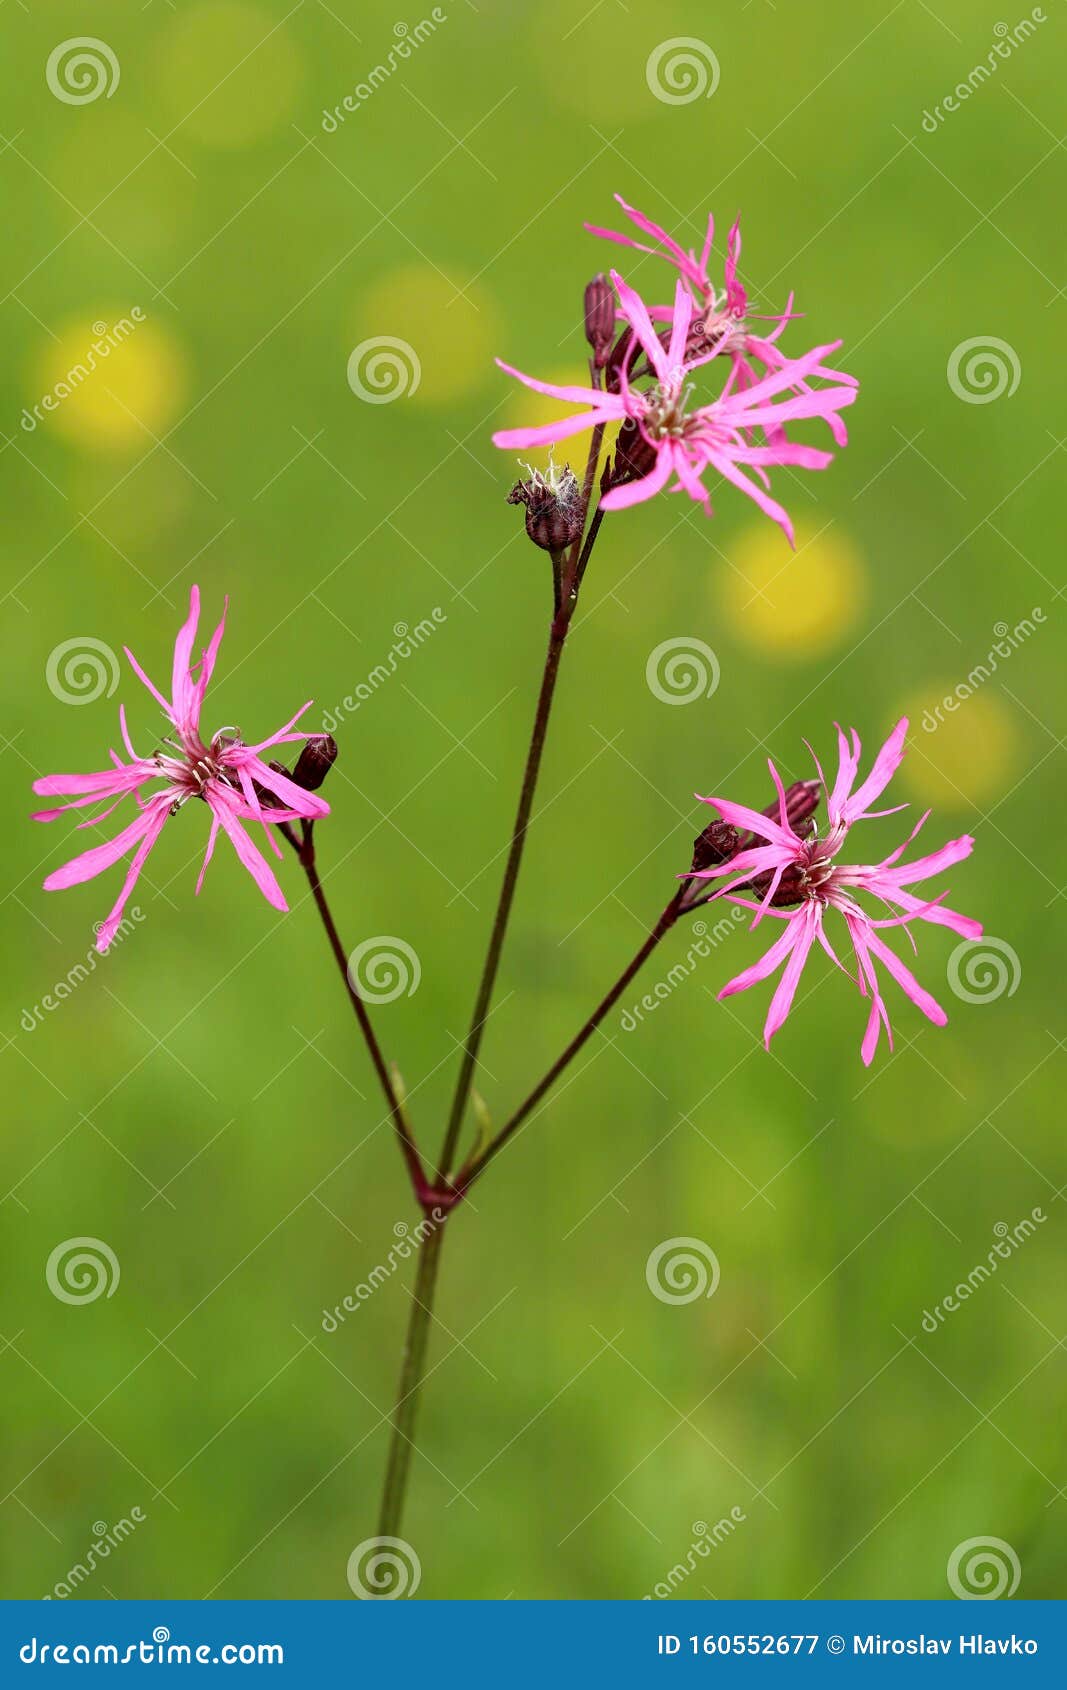 meadow flower ragged robin lychnis flos-cuculi